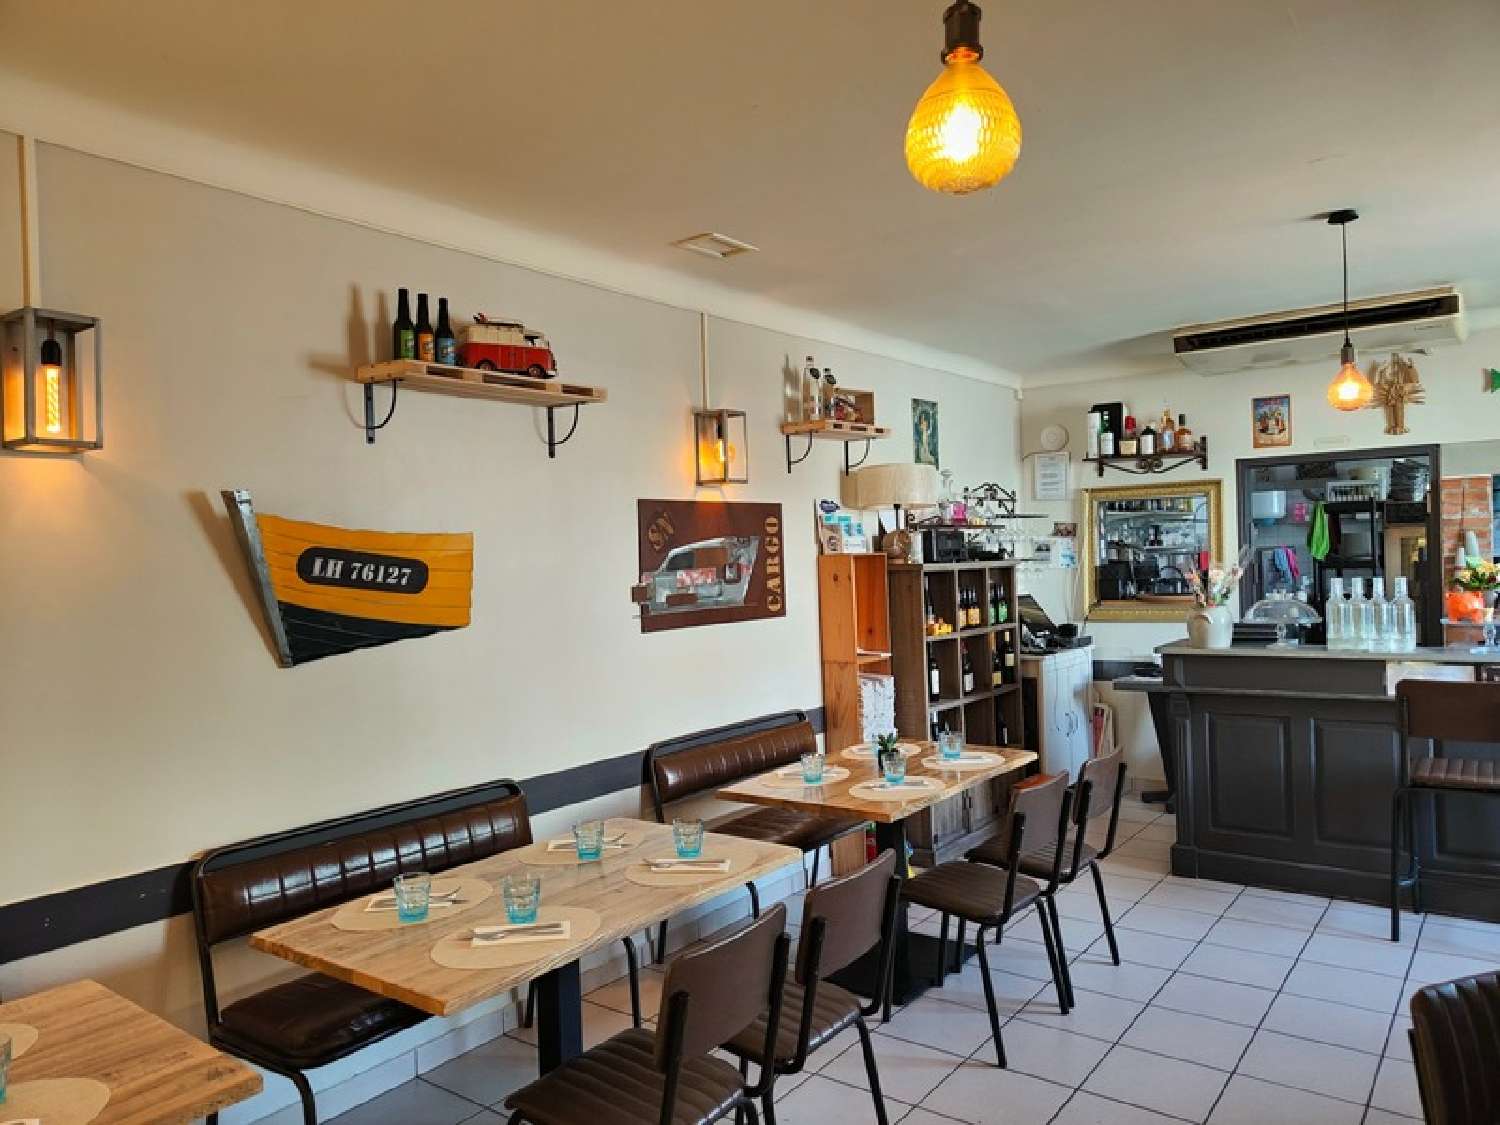  à vendre restaurant Fromentine Vendée 2